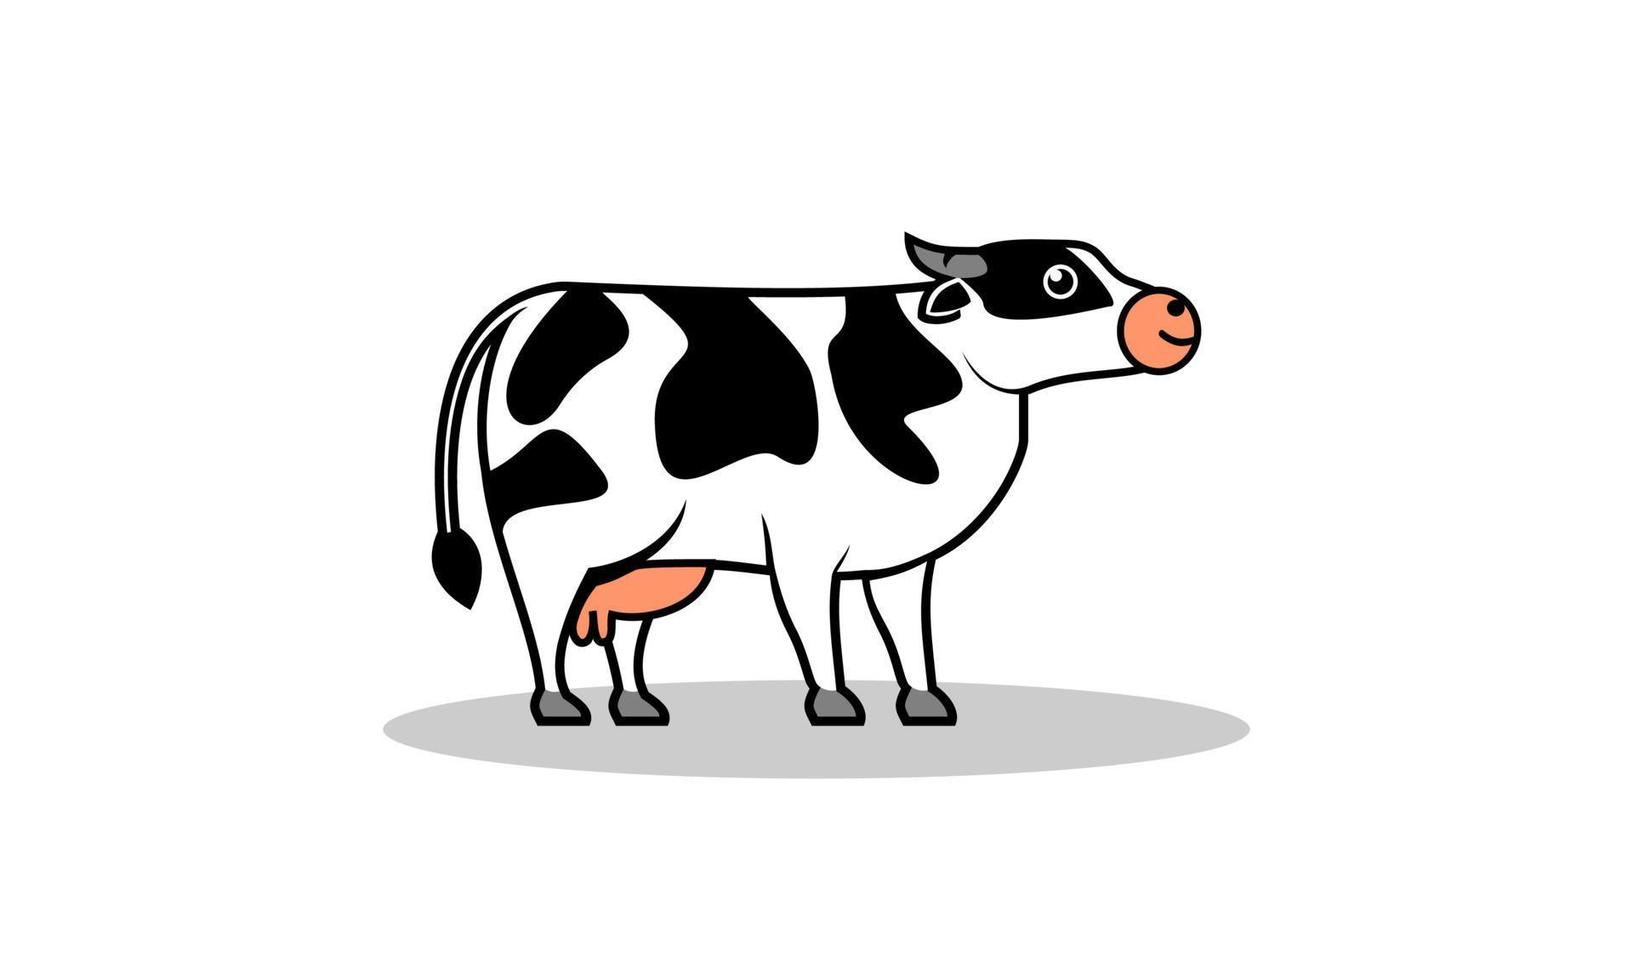 illustrazione vettoriale in stile cartone animato di vacca da latte. adatto per materiale didattico per bambini, illustrazione di libri per bambini o per prodotti lattiero-caseari.